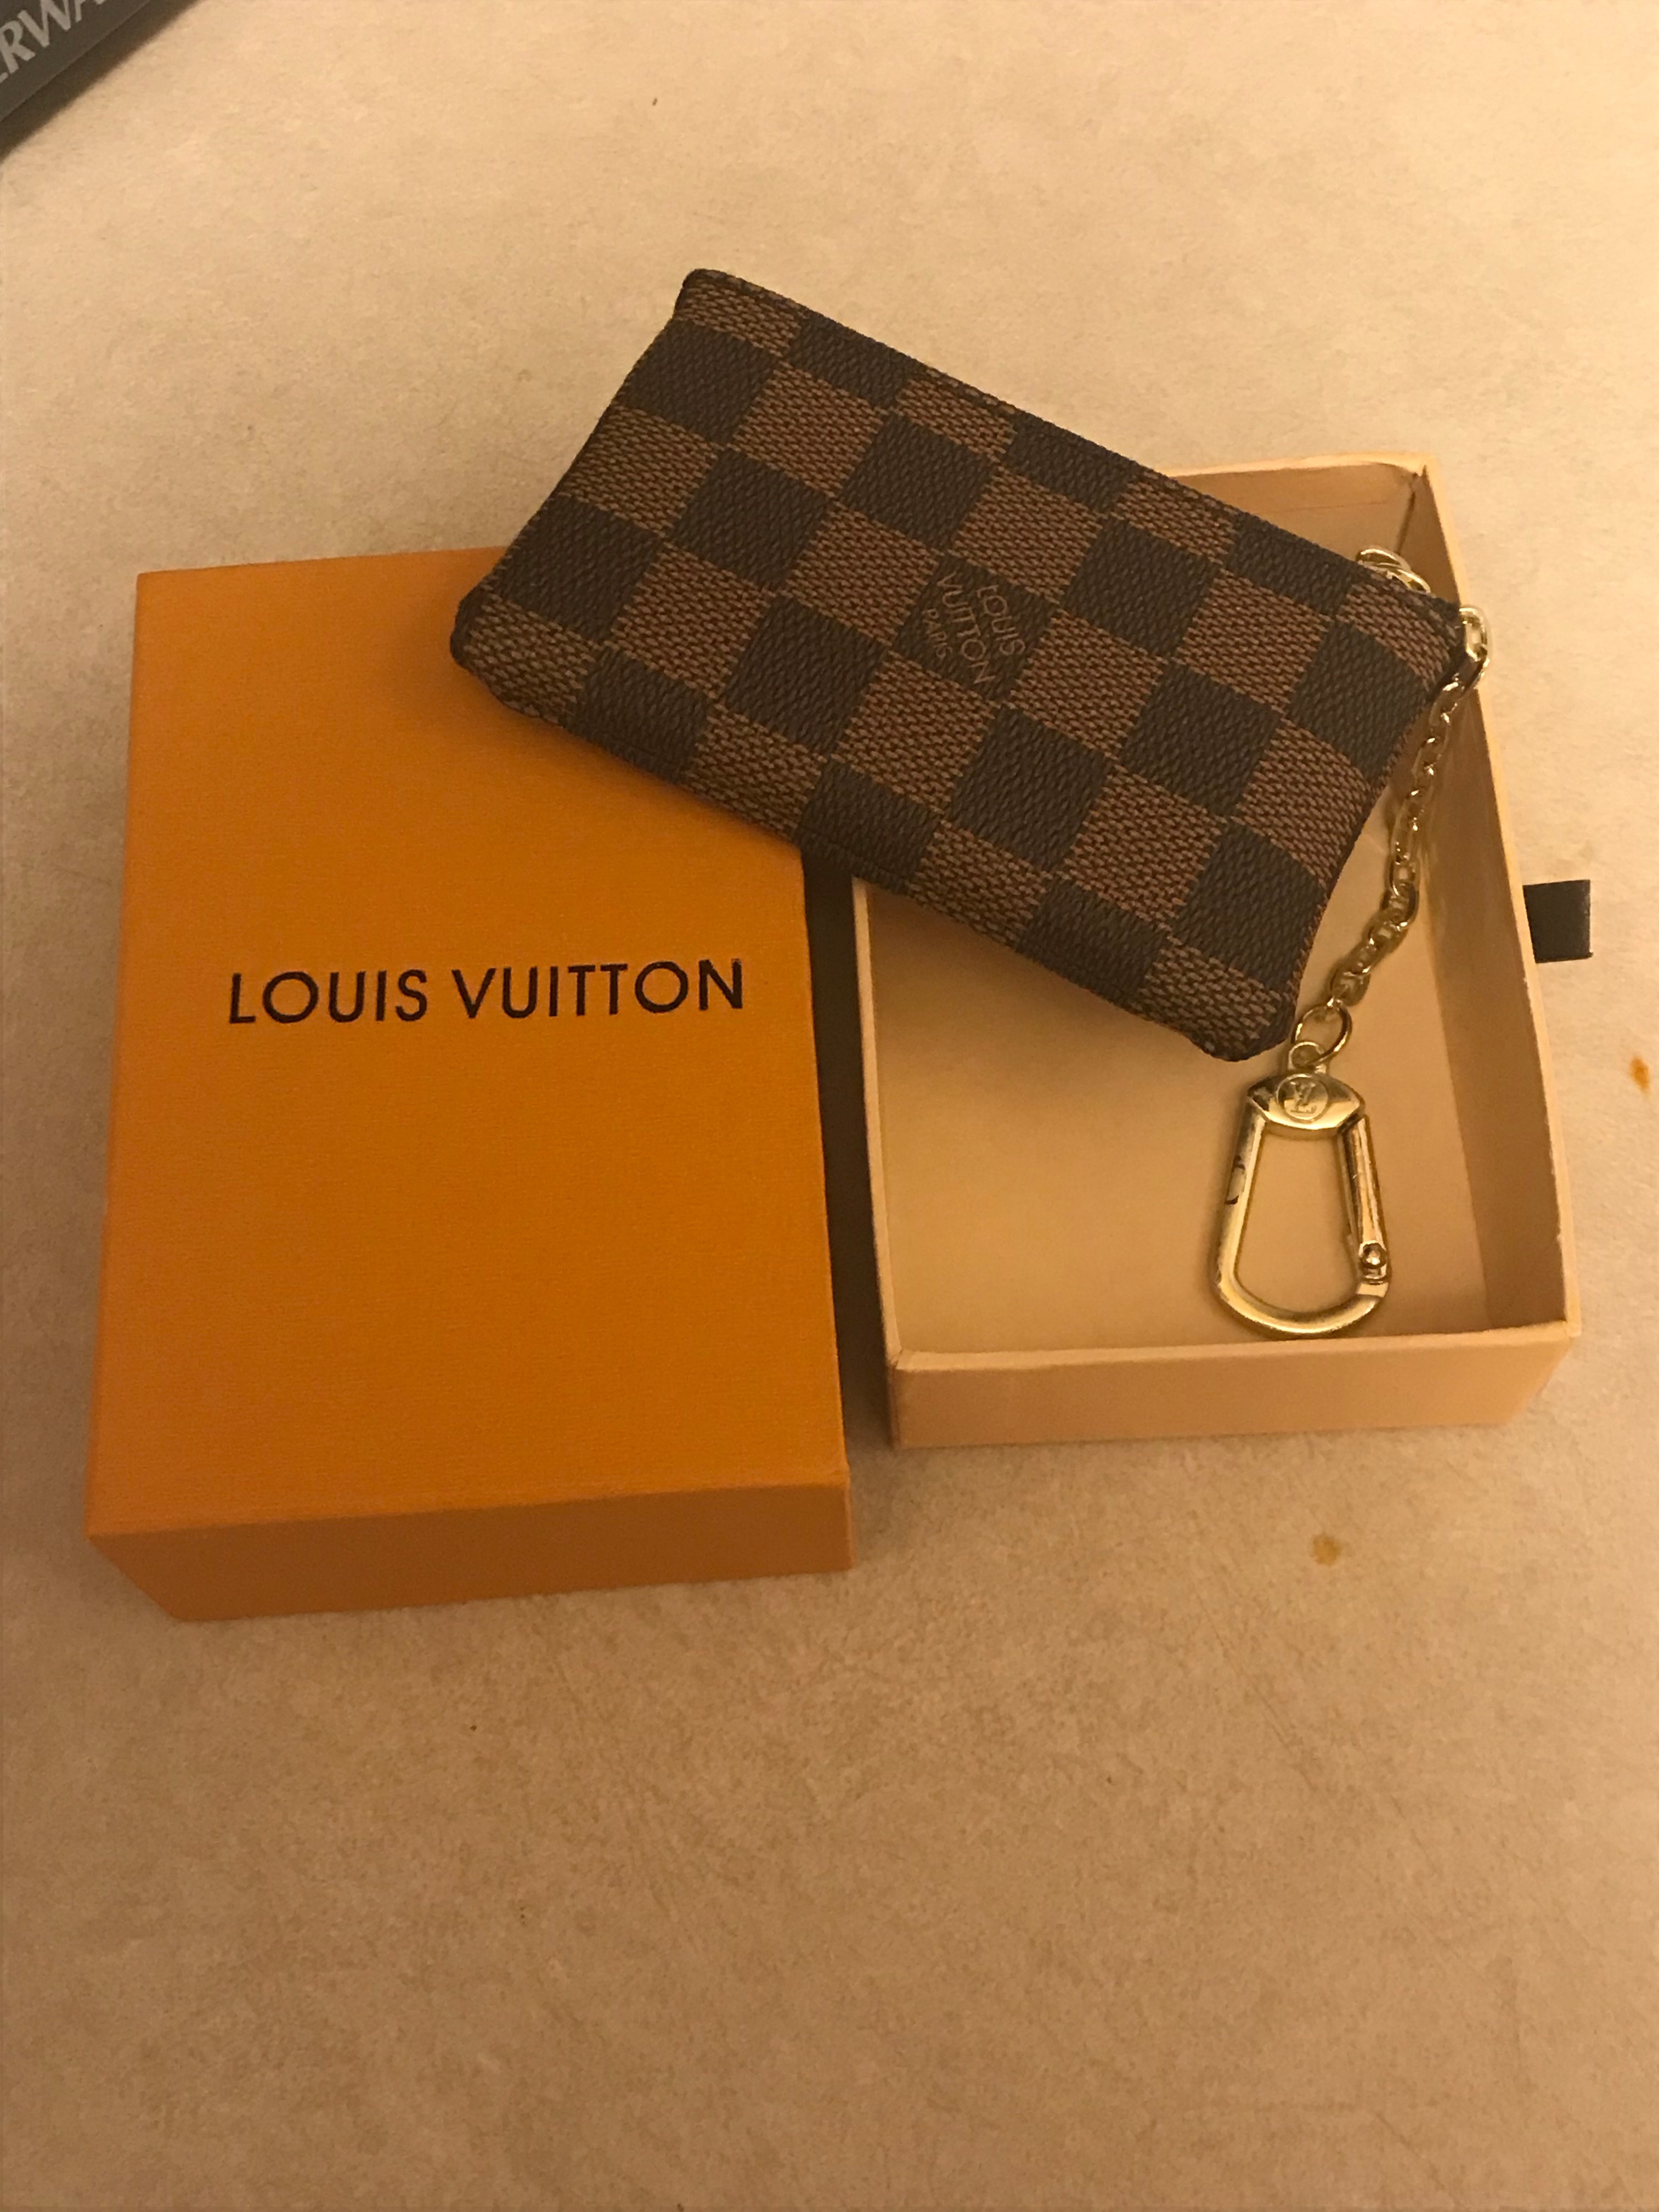 Louis Vuitton Key Pouch: Is it Worth It? 